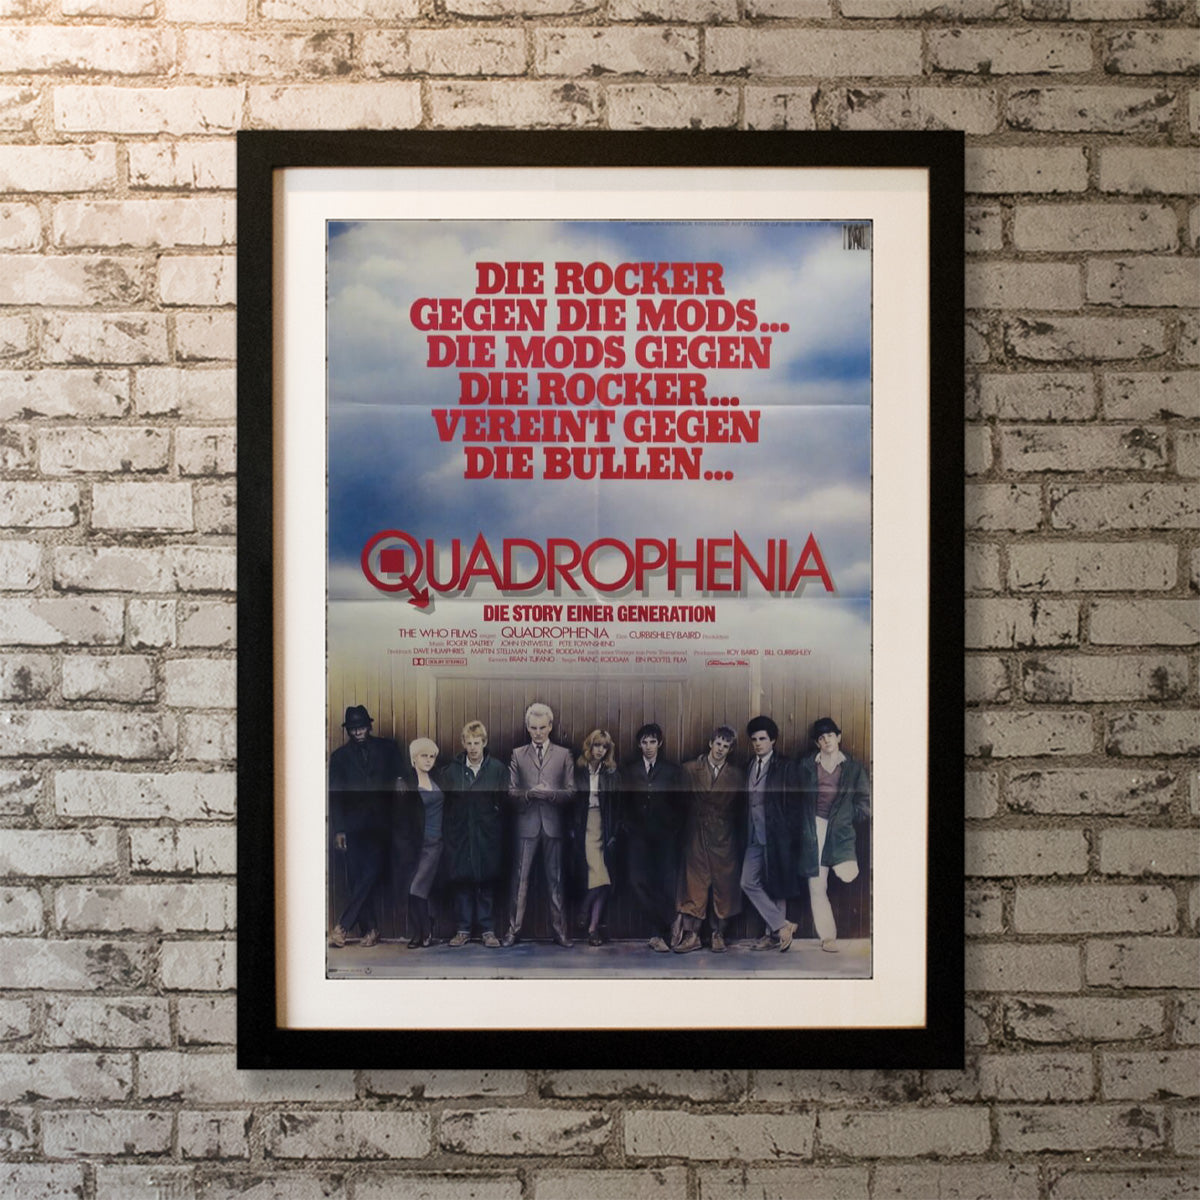 Quadrophenia (1980)